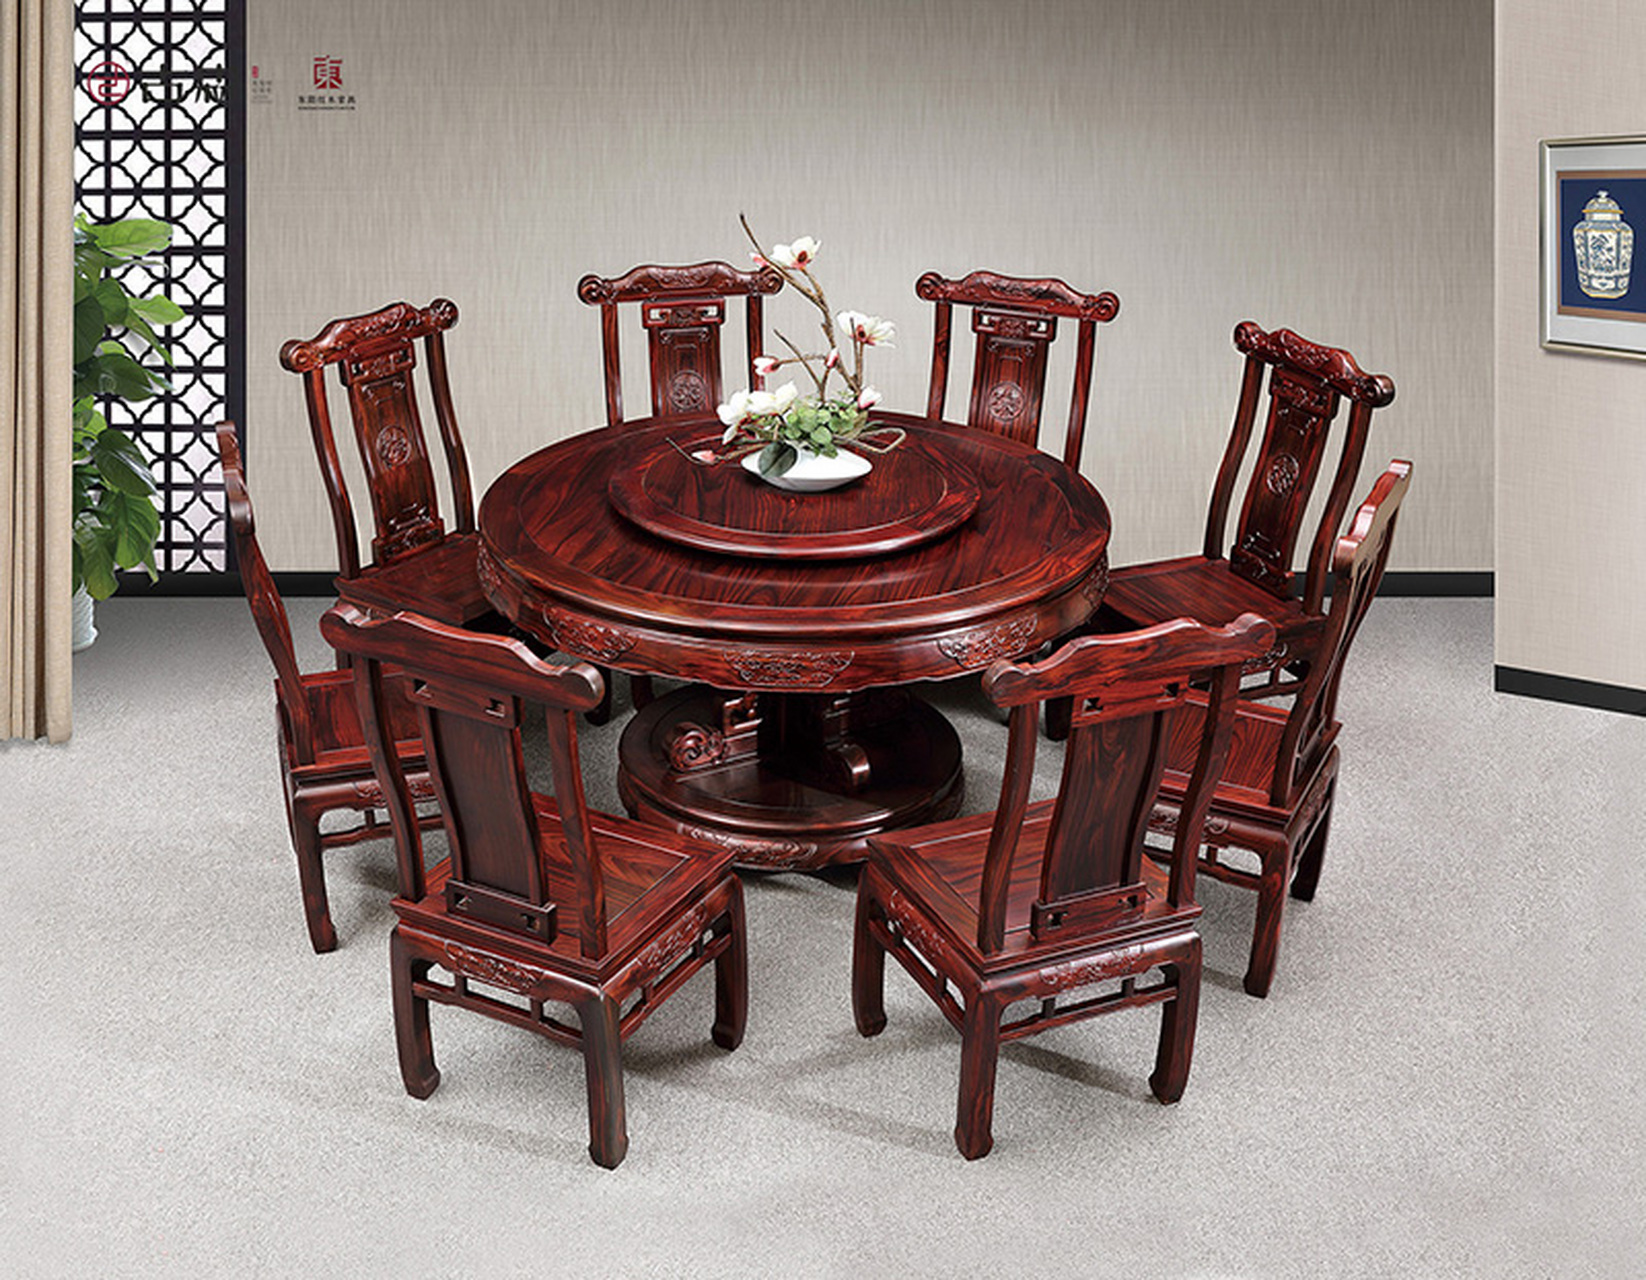 【红木圆台餐桌】精选红酸枝,打造典雅红木餐桌!